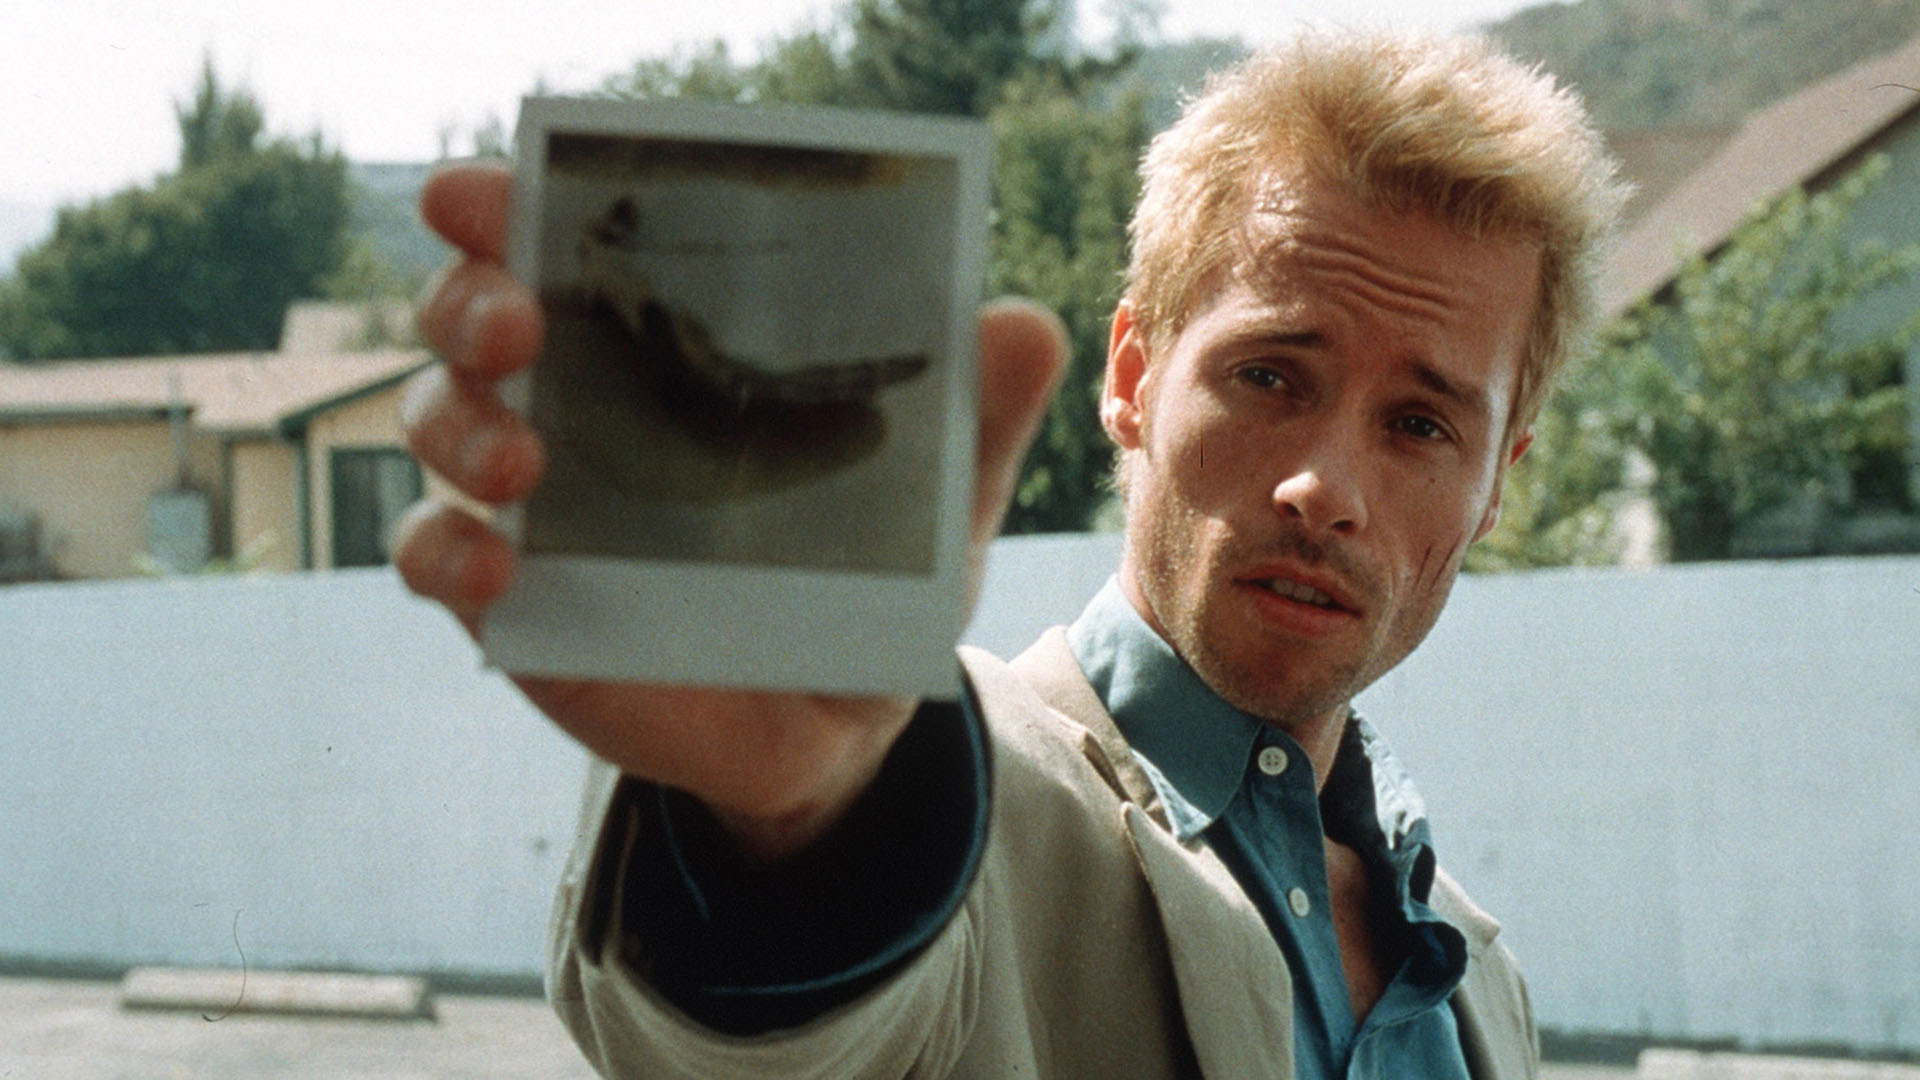 گای پیرس در فیلم Memento یک عکس پلوراید در دست دارد